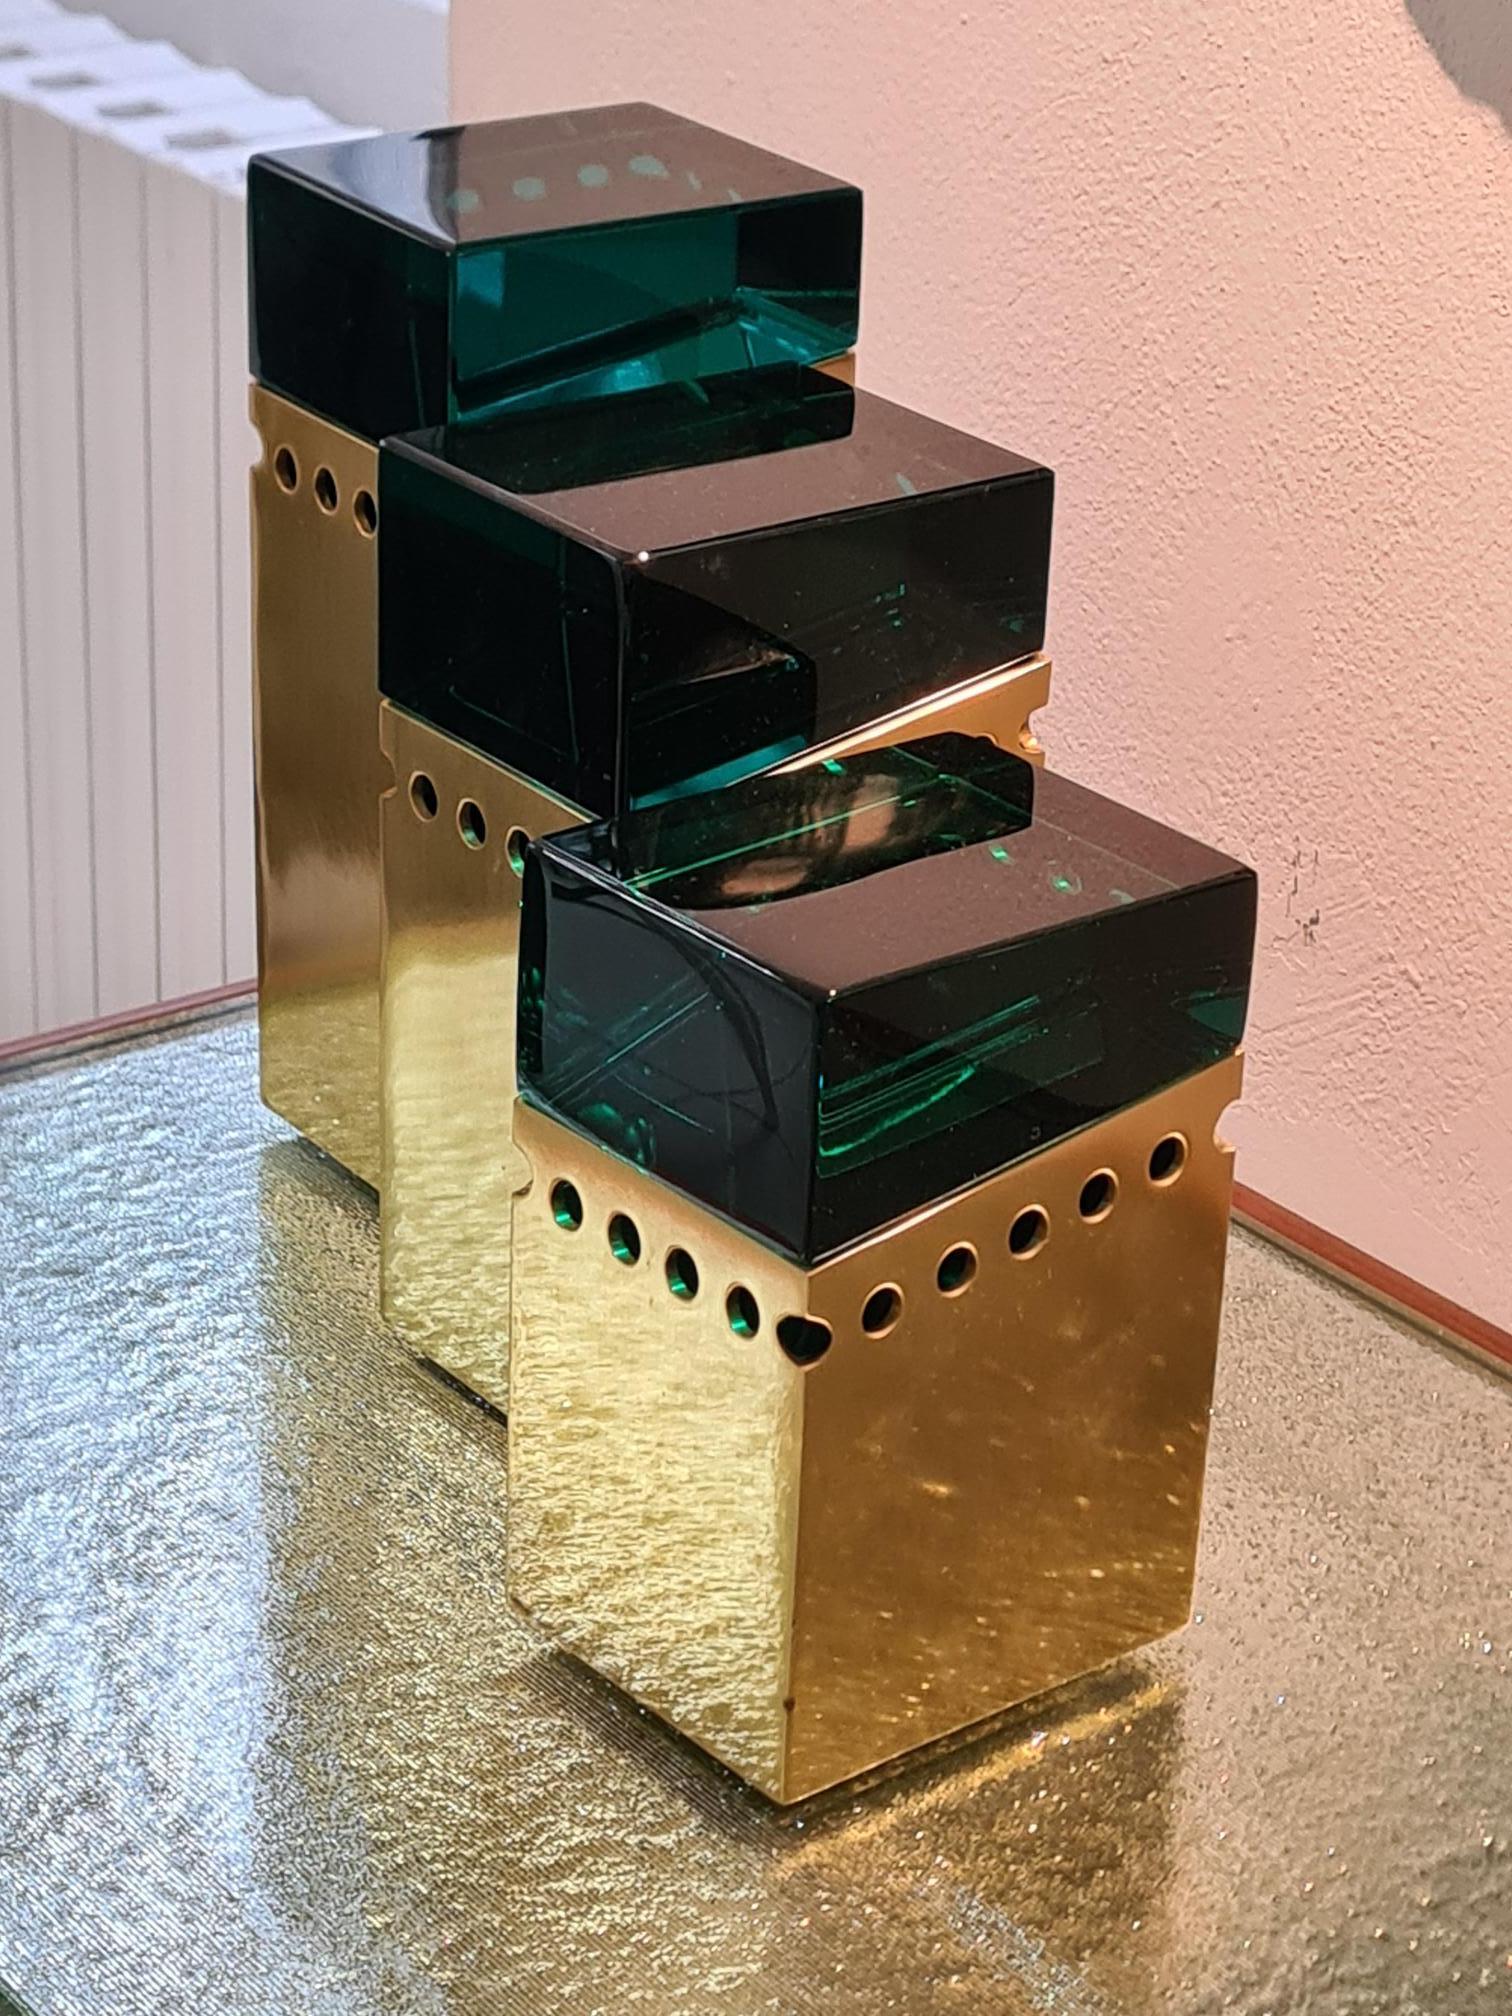 Boîtes TRAPHOR
triptyque de boîtes en laiton poli et protégé par une laque jaune transparente, dont les dimensions exactes sont : 
24 x 10 x 8.5 
21 x 10 x 8.5
17 x 10 x 8.5
Ce triptyque est entièrement réalisé à la main en Italie et est conçu par